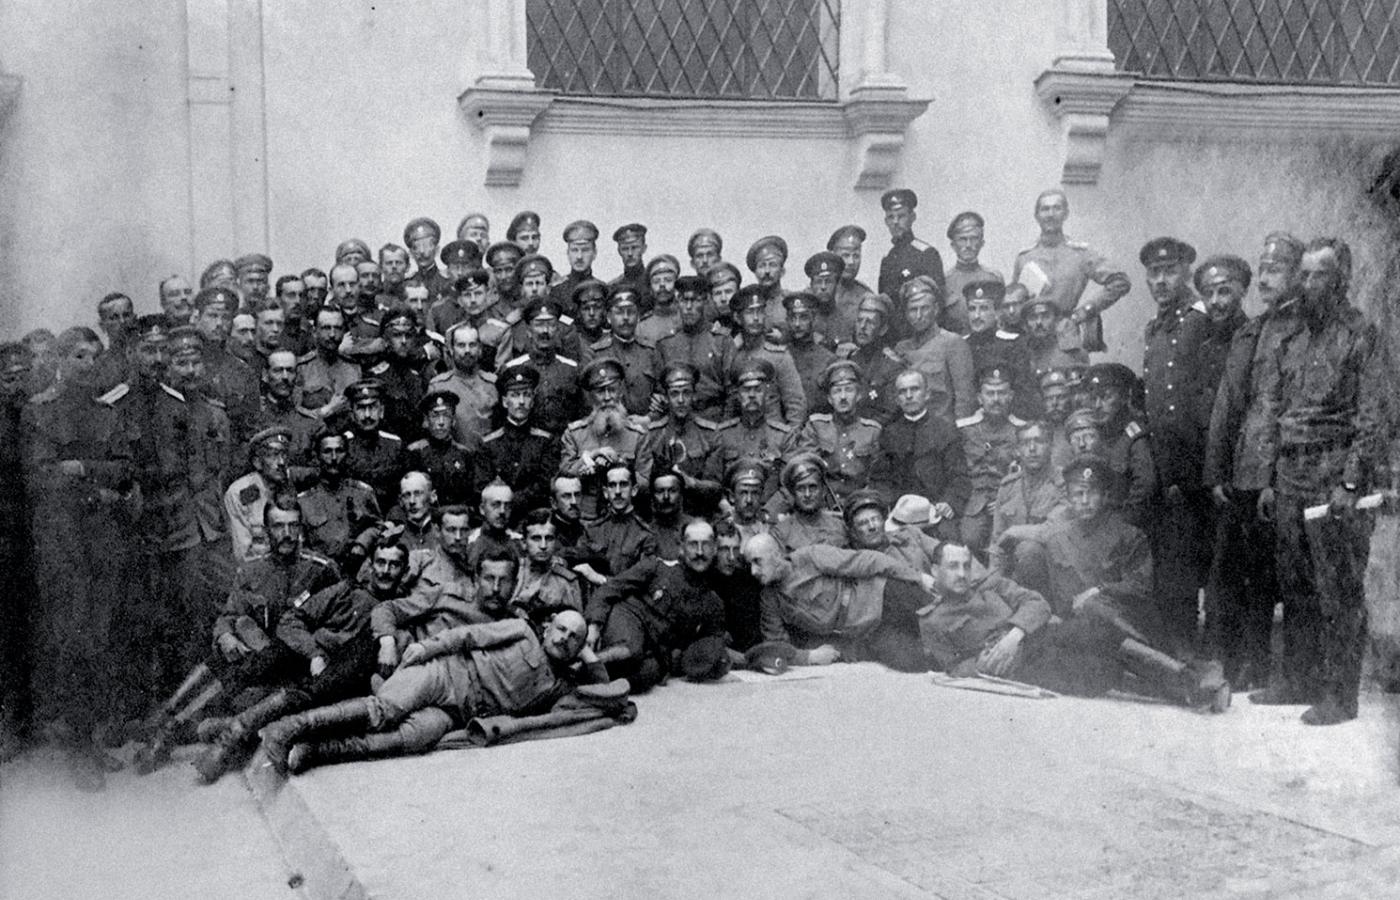 Oficerowie polscy z armii rosyjskiej – członkowie Związku Wojskowych Polaków Okręgu Moskiewskiego, zdjęcie z 1917 r.